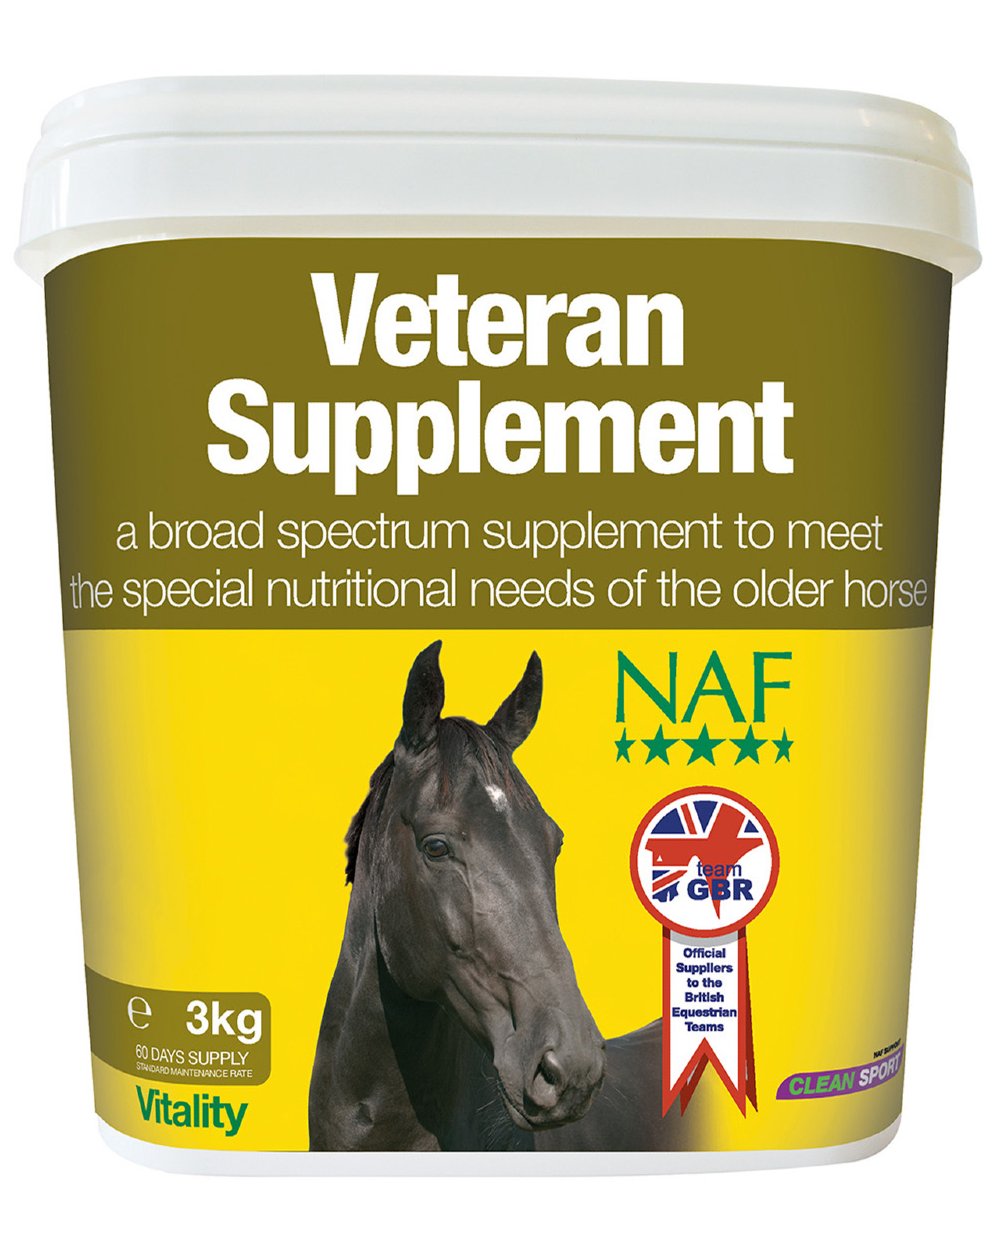 NAF Veteran Supplement 3kg on white background